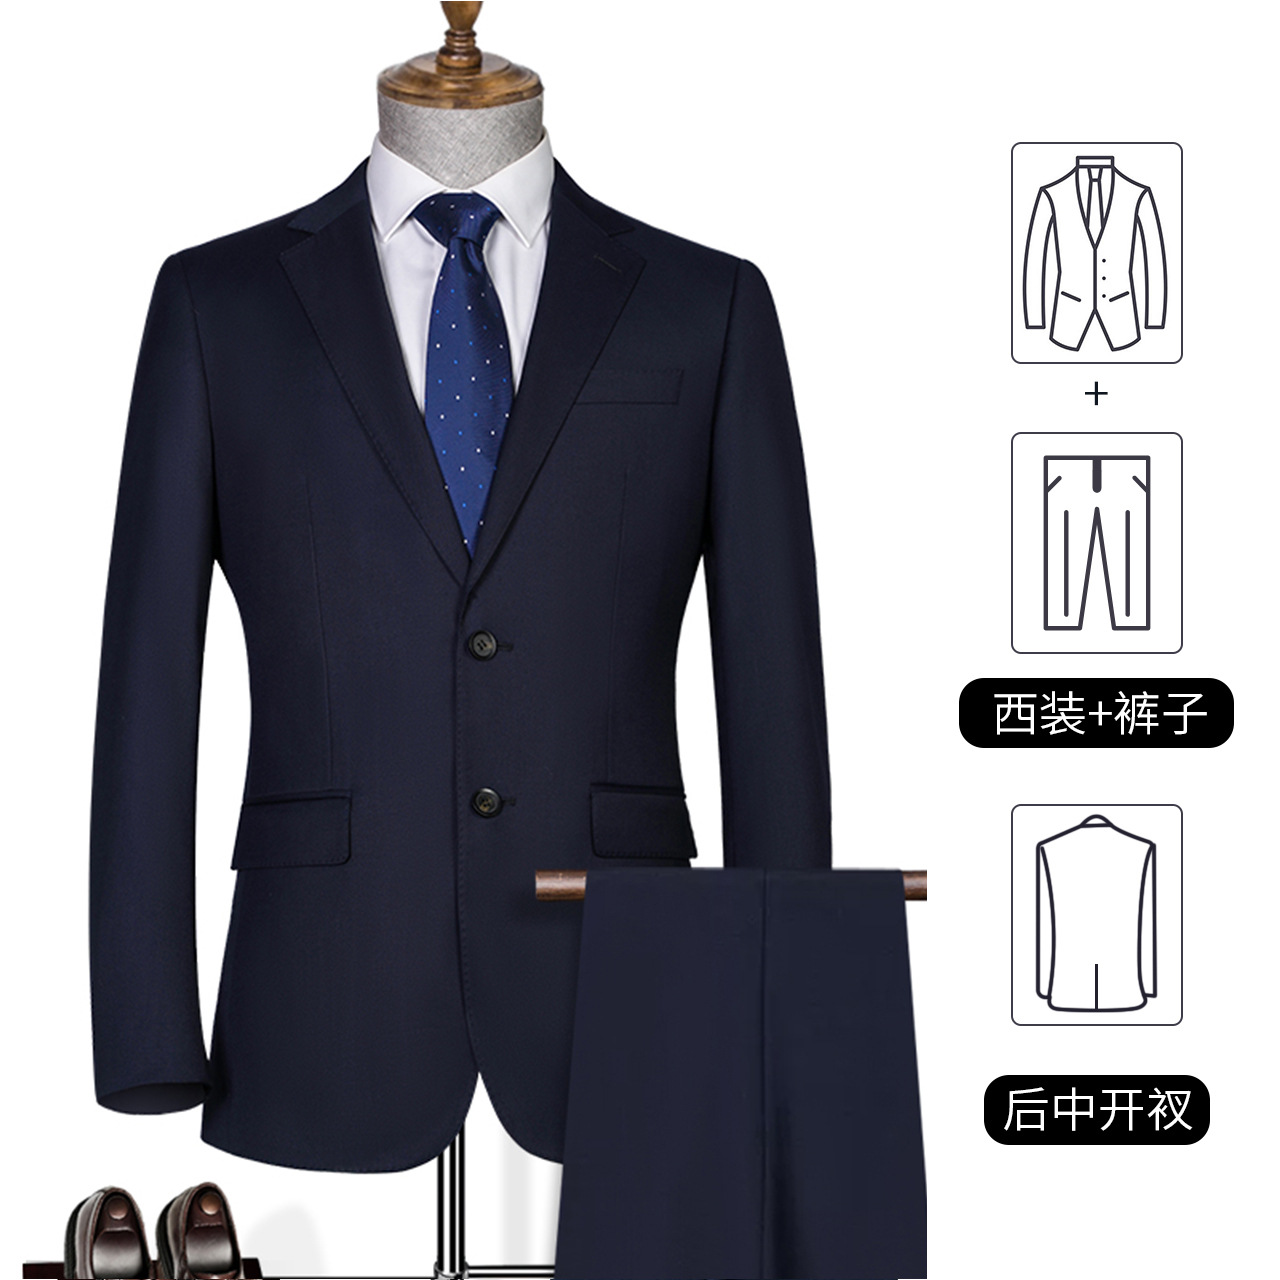 Black Technology Waterproof Oil-Proof Anti-Fouling Suit Men's Bridesmaid Suit Men's Suit Jacket Casual Business Business Wear